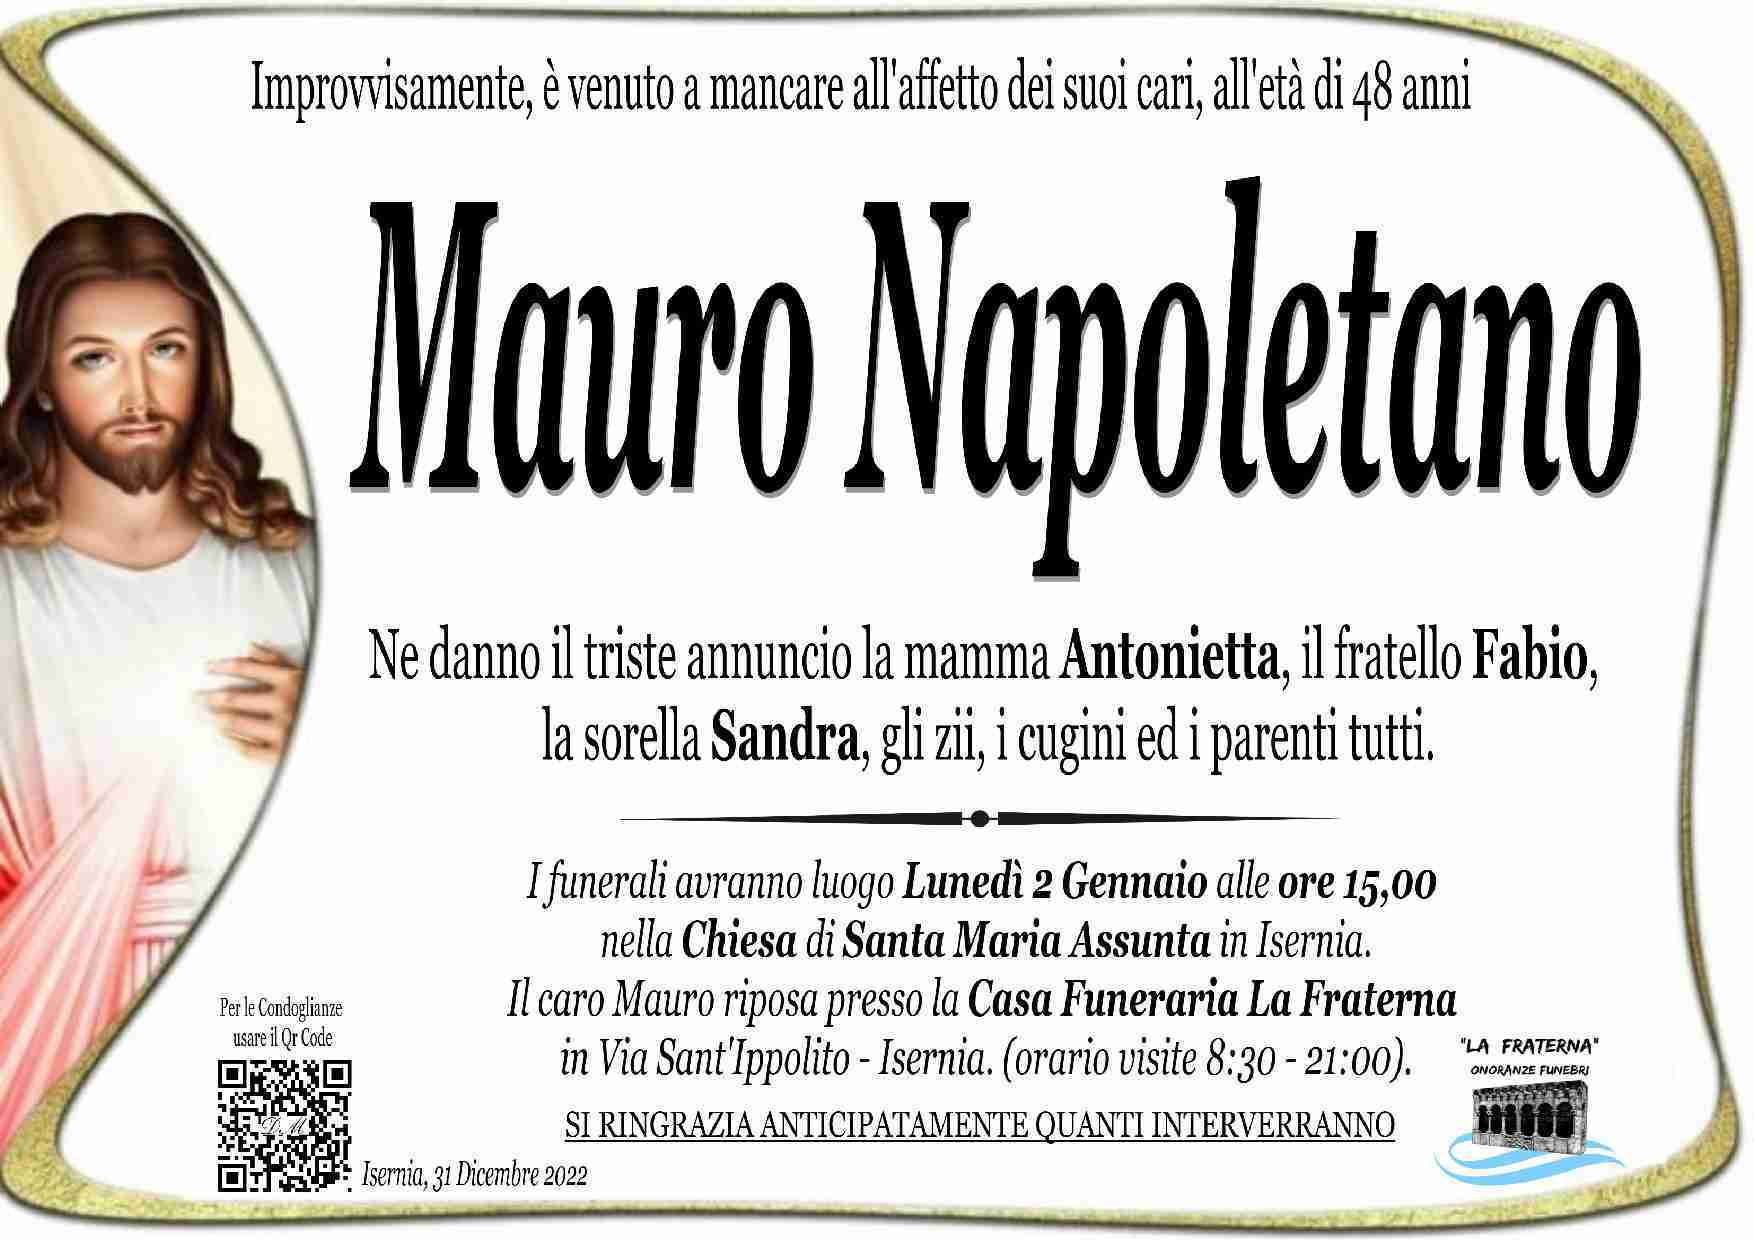 Mauro Napoletano